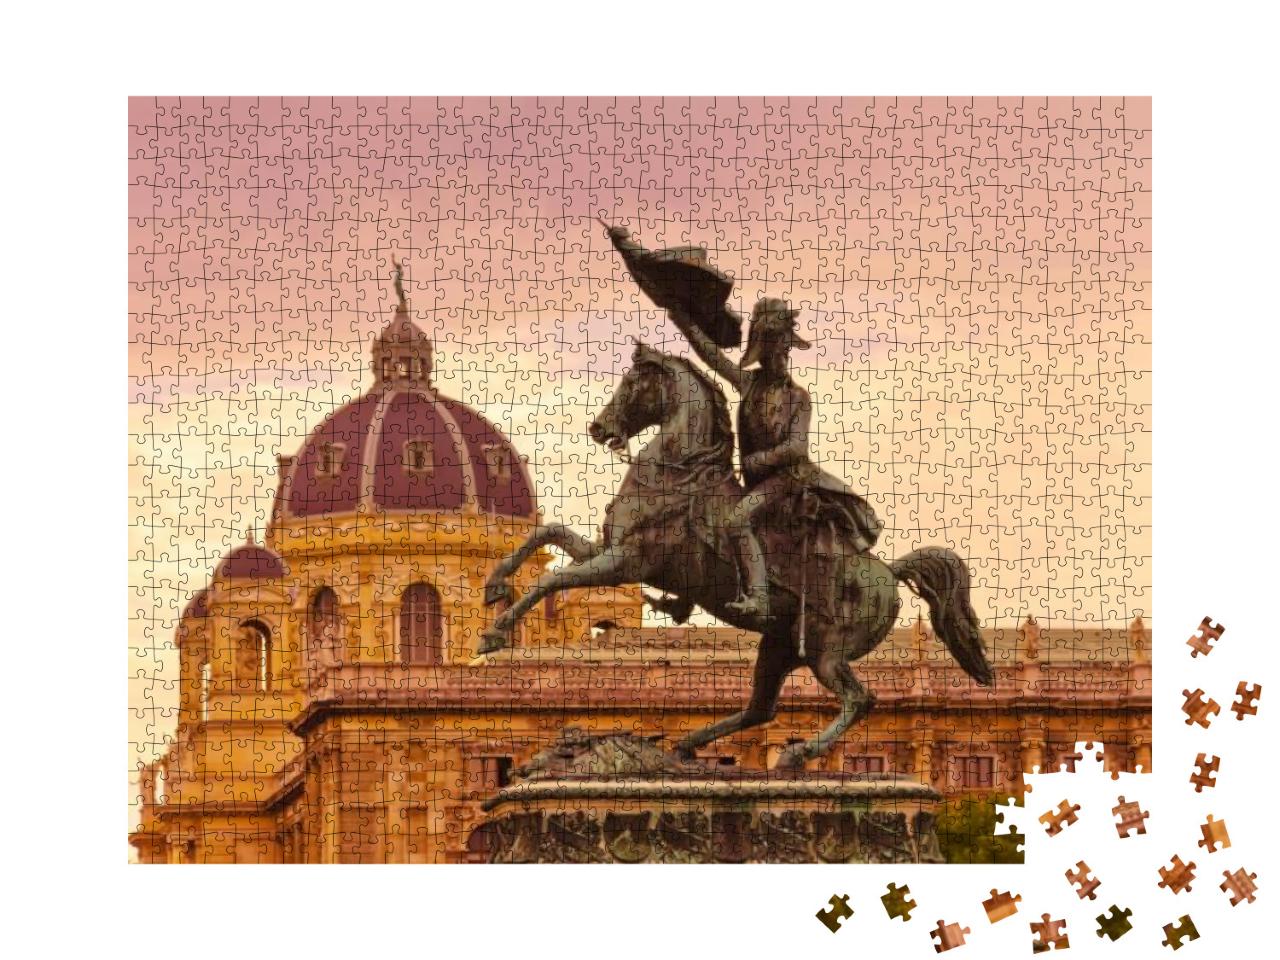 Horse & Rider Archduke Charles / Erzherzog Karl Memorial... Jigsaw Puzzle with 1000 pieces